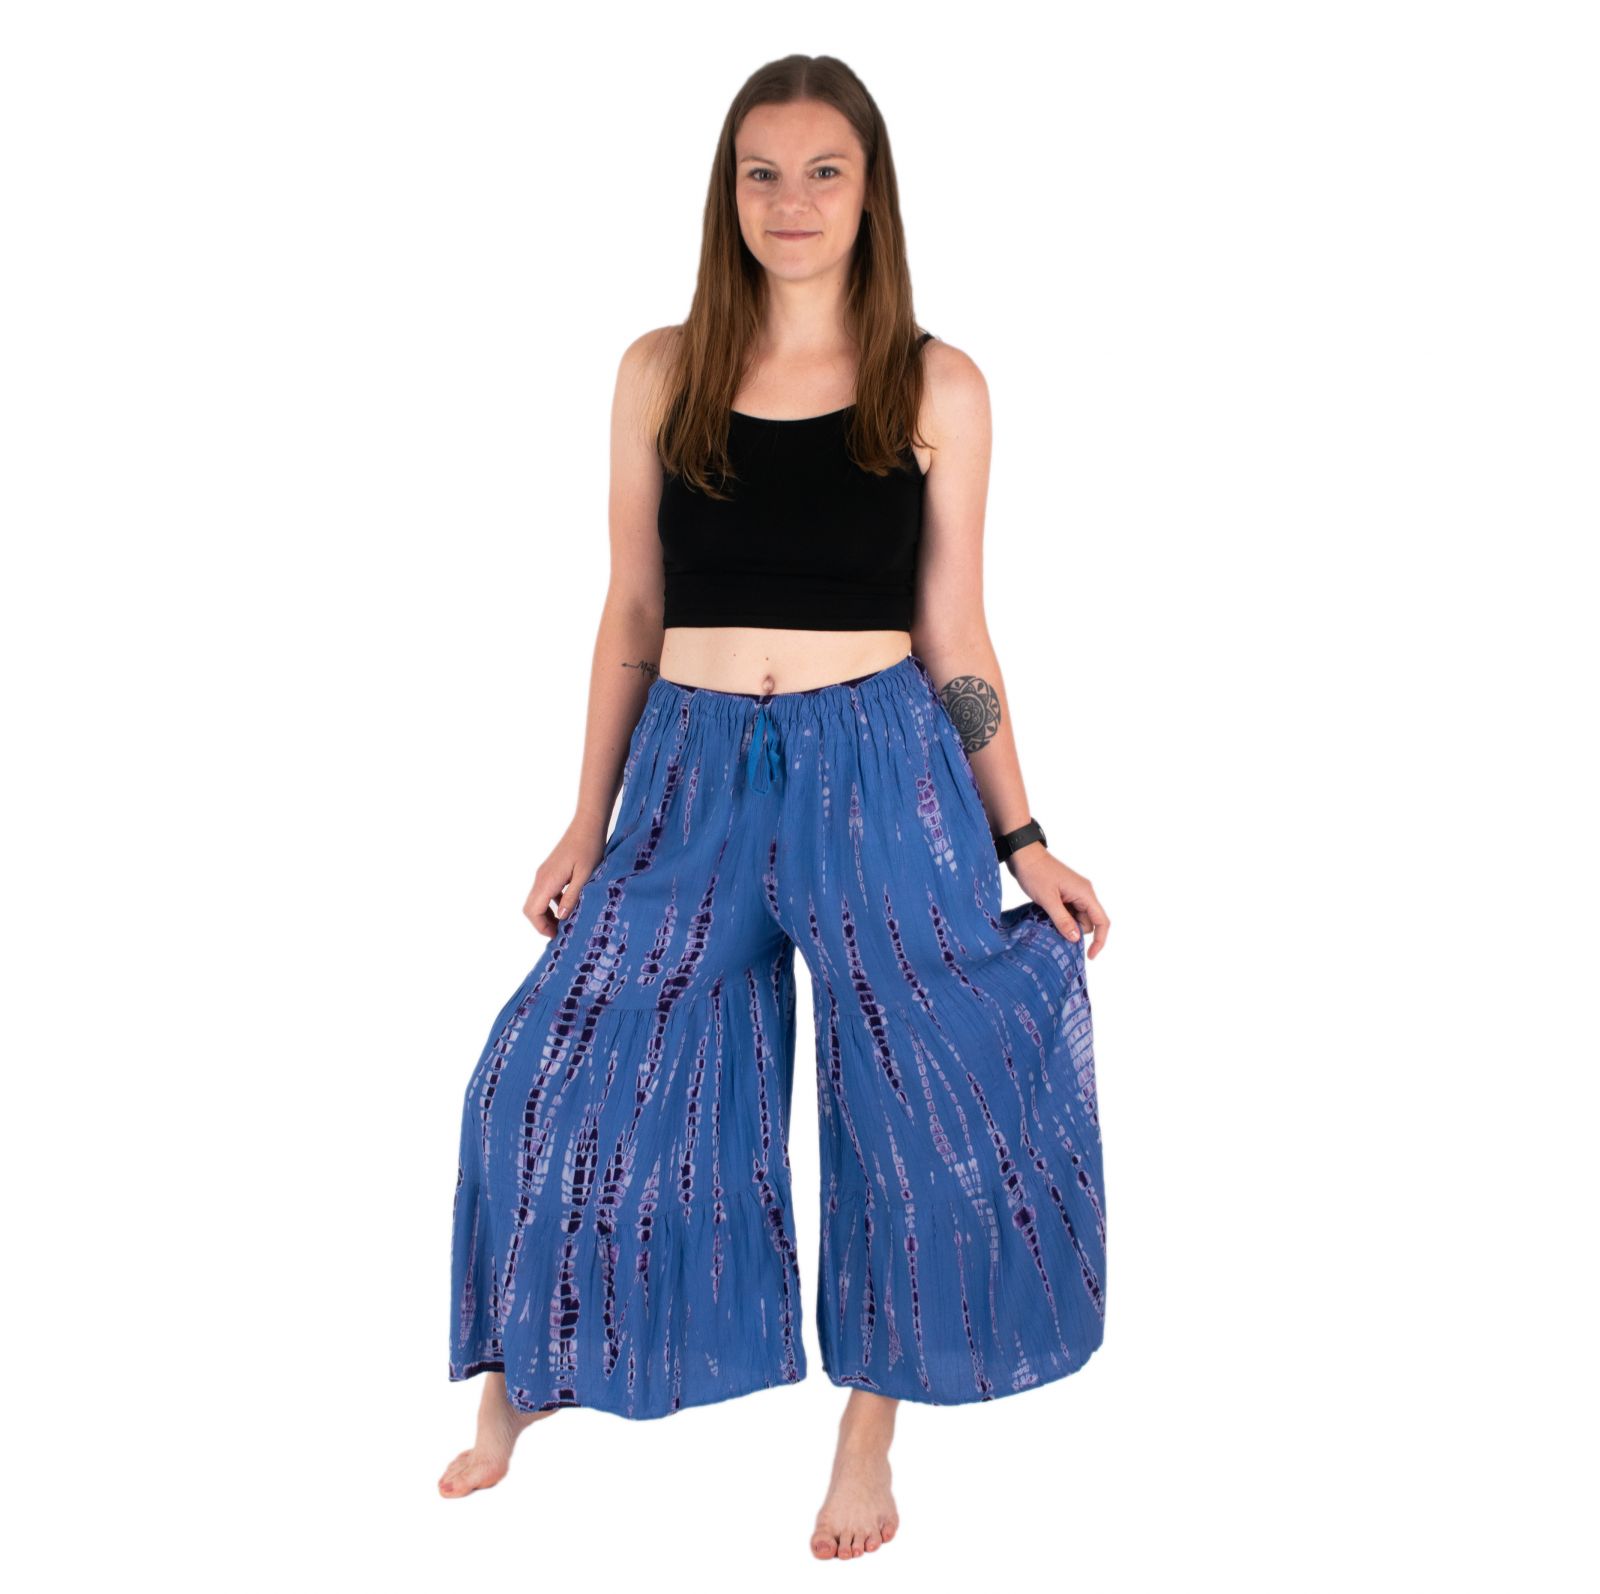 Tie-dye trouser skirt Yana Purple-Blue Thailand